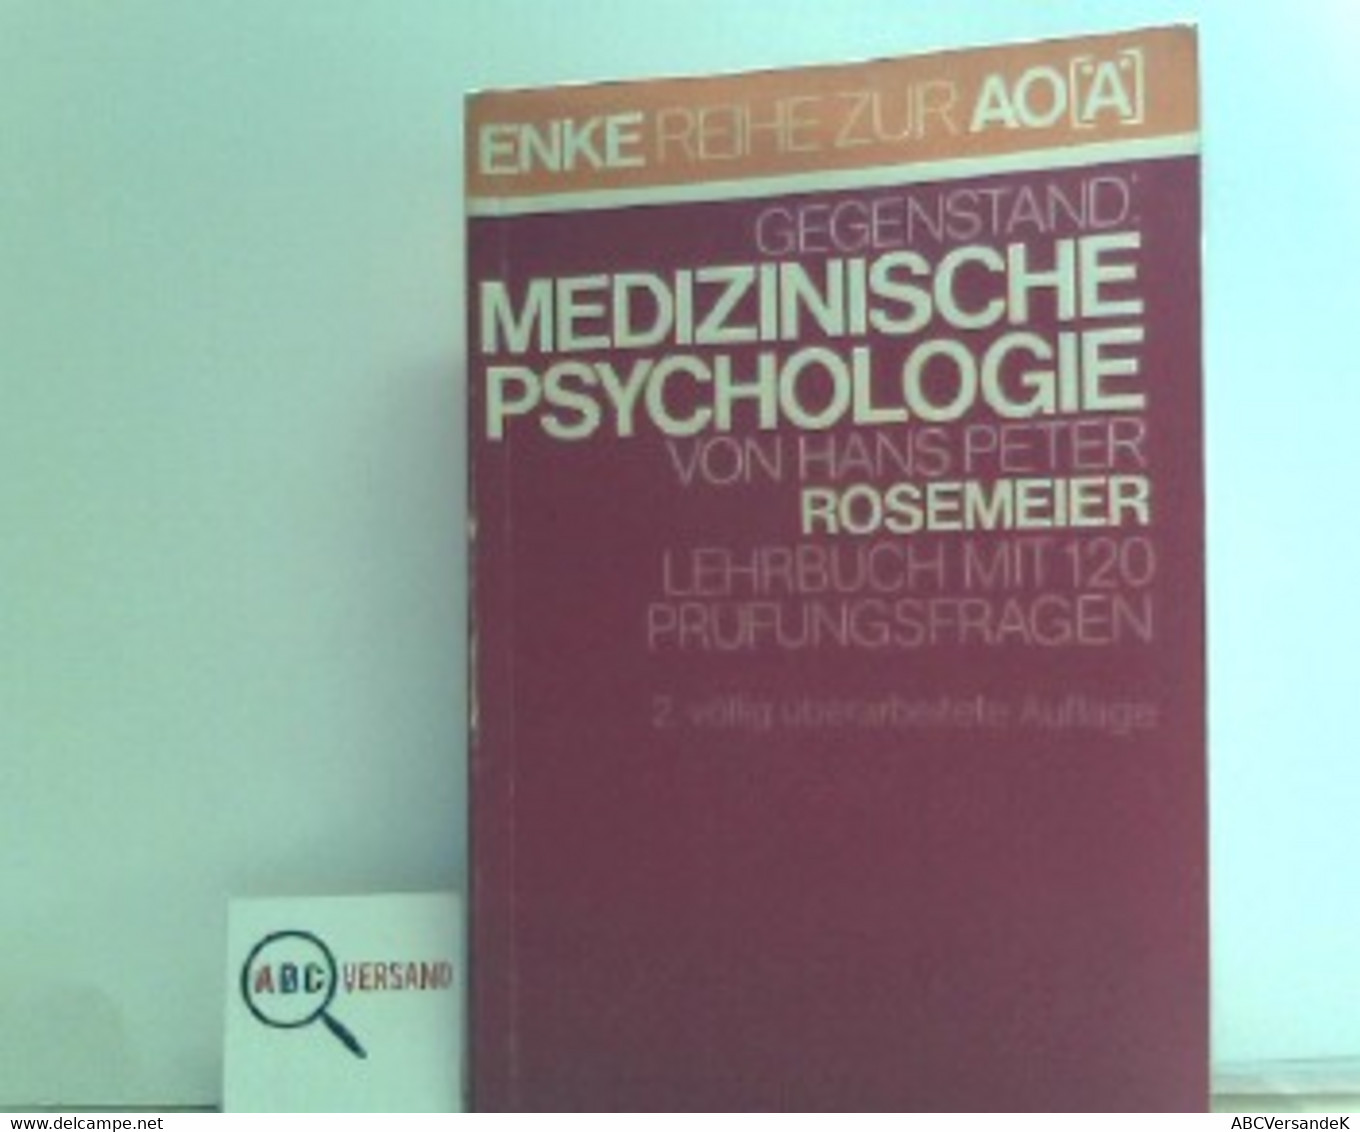 Medizinische Psychologie : Lehrbuch Mit 120 Prüfungsfragen,Hans Peter Rosemeier. Mit Beitr. Von Meinhard Adler - Psychologie